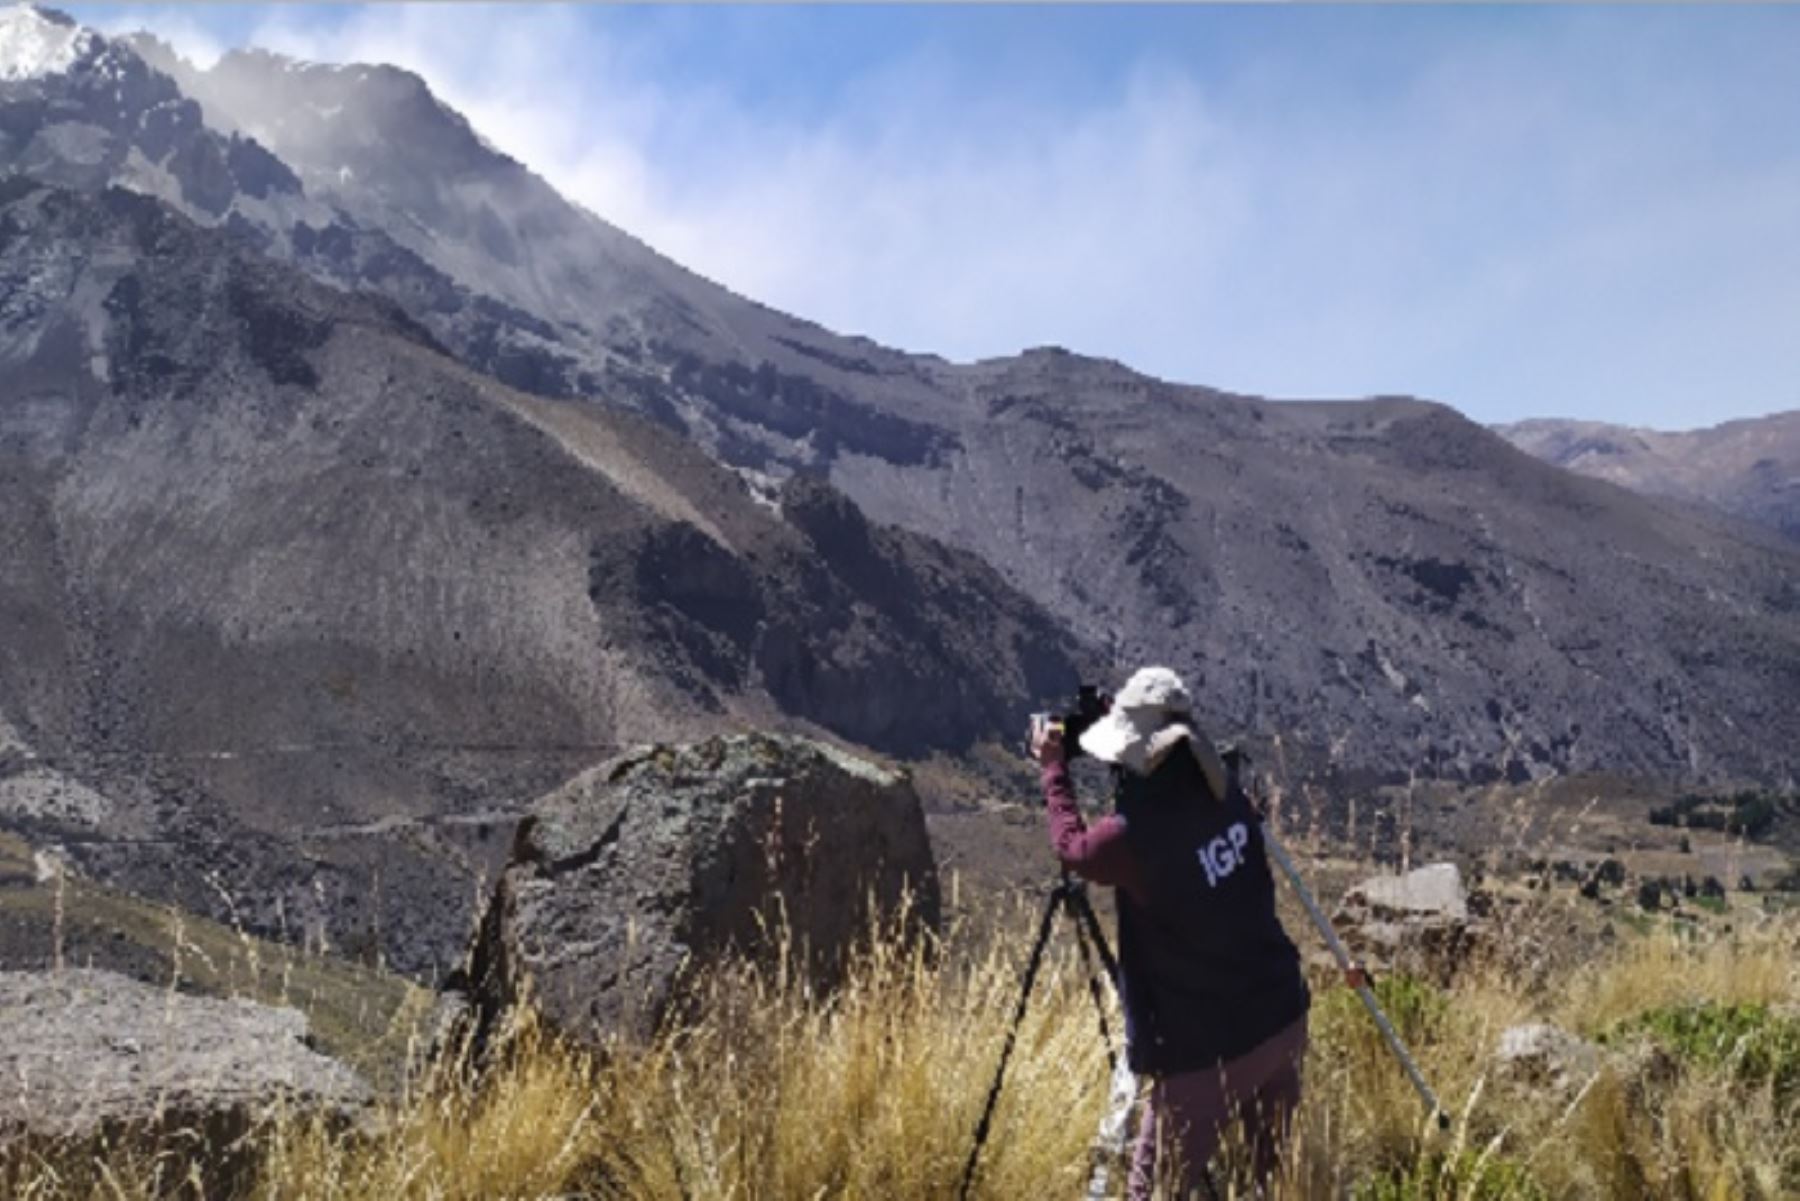 El Instituto Geofísico del Perú (IGP) inició hoy los trabajos de instalación de cuatro estaciones GPS adicionales de doble frecuencia alrededor del volcán Ubinas, ubicado en Moquegua, para proporcionar datos de alta precisión que permitan identificar y cuantificar posibles deformaciones en el volcán ante el ascenso de fluidos magmáticos.